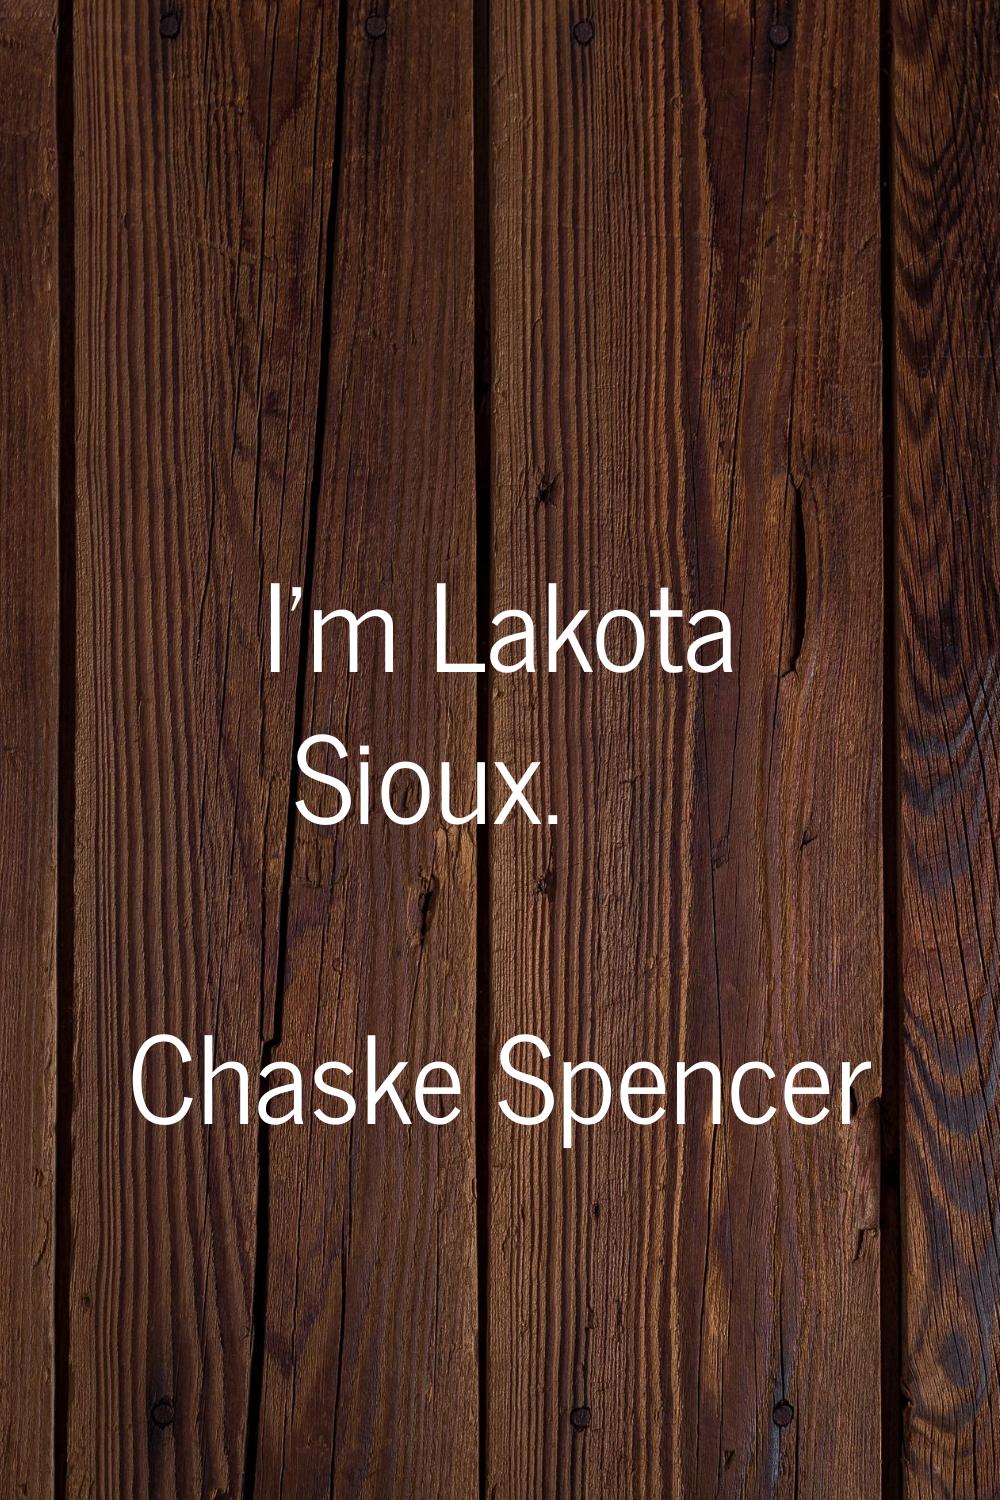 I'm Lakota Sioux.